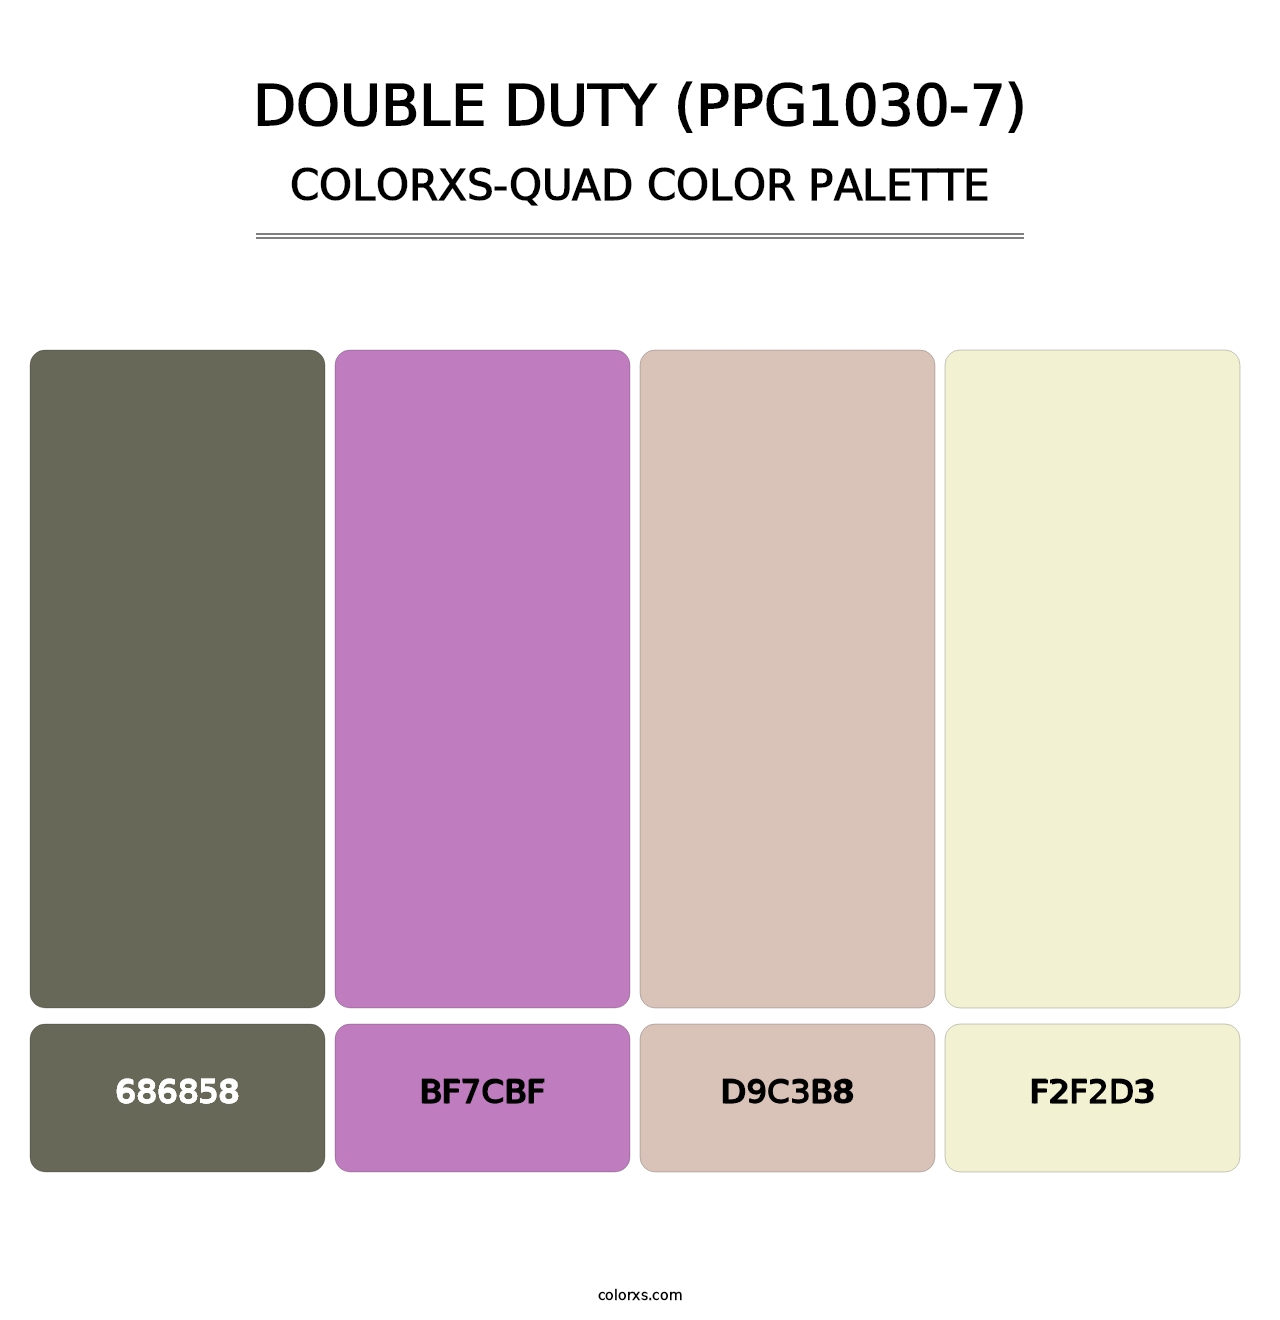 Double Duty (PPG1030-7) - Colorxs Quad Palette